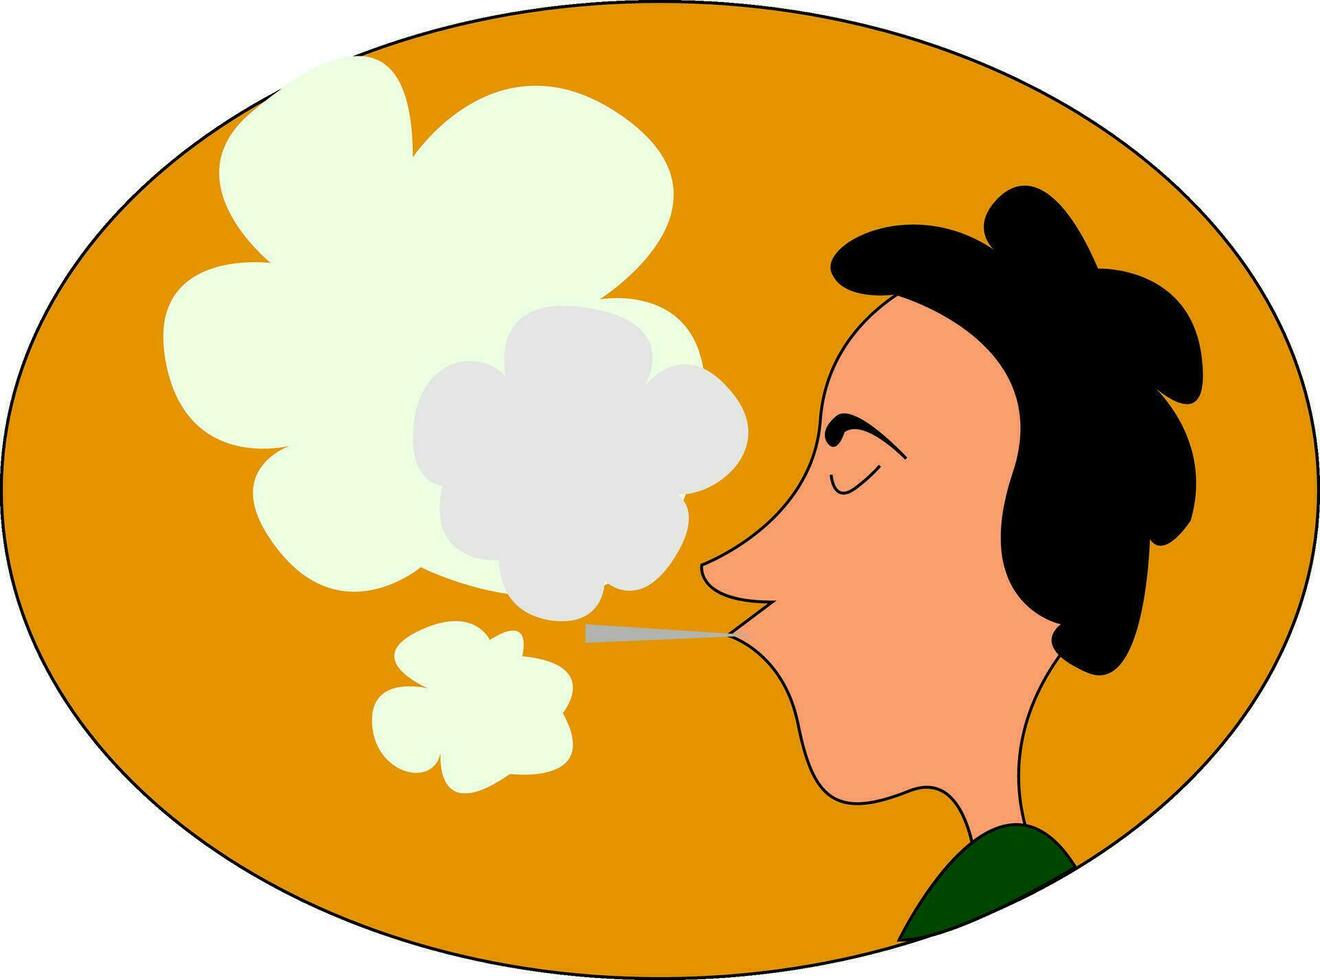 en rökning man, vektor eller Färg illustration.